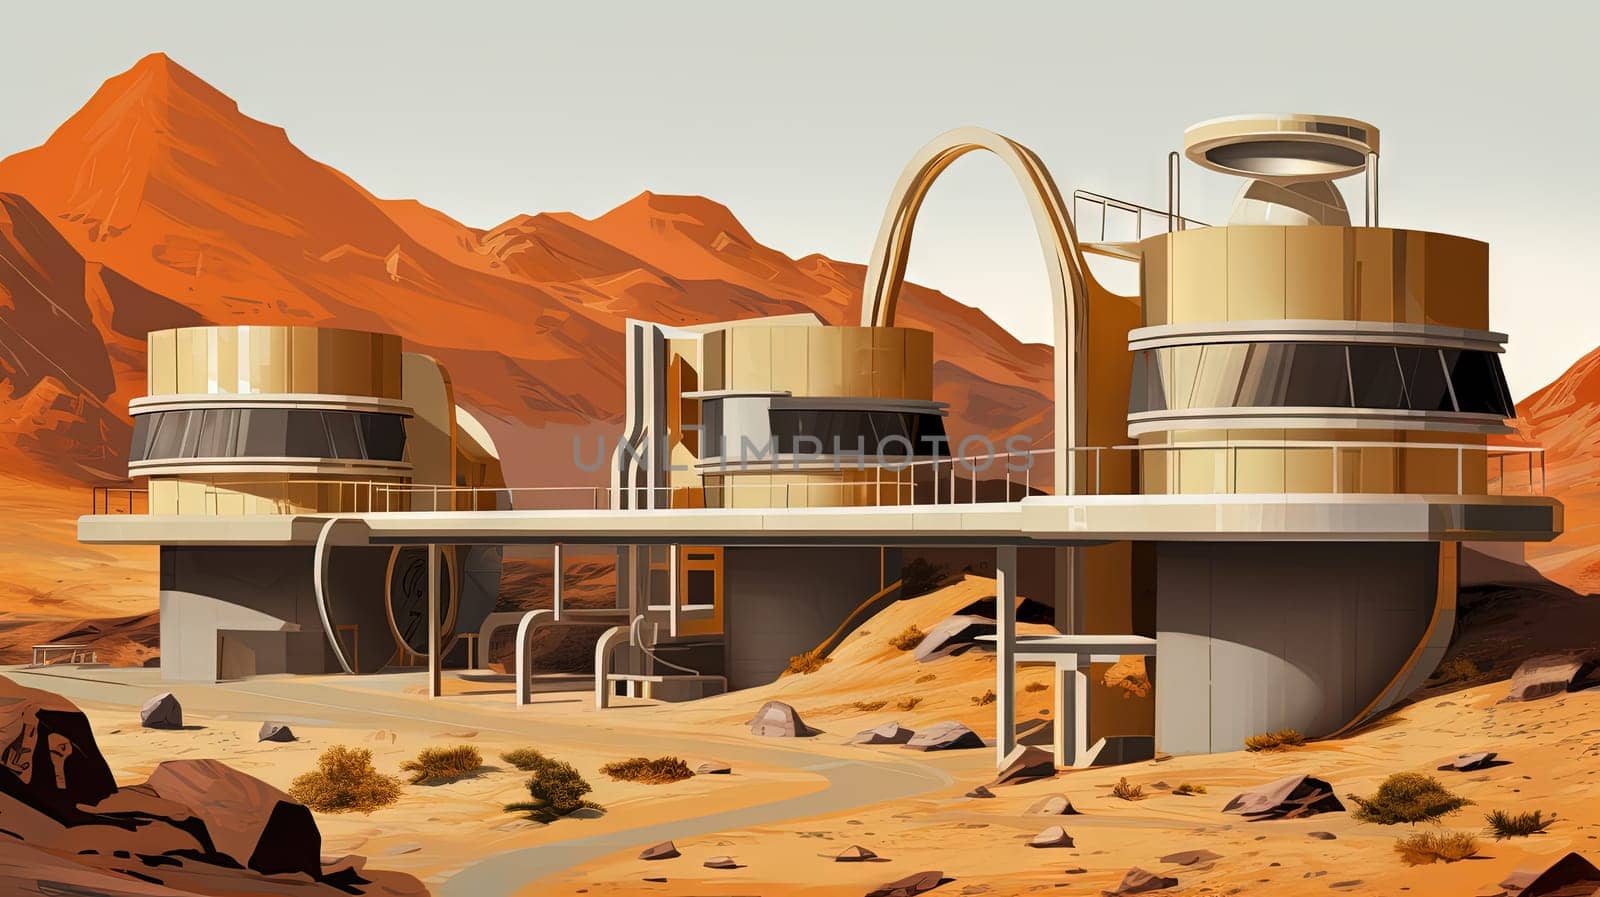 Retro futuristic architecture in sci-fi scene on the desert planet. Alien landscape with nostalgic retro future constructions. Generated AI